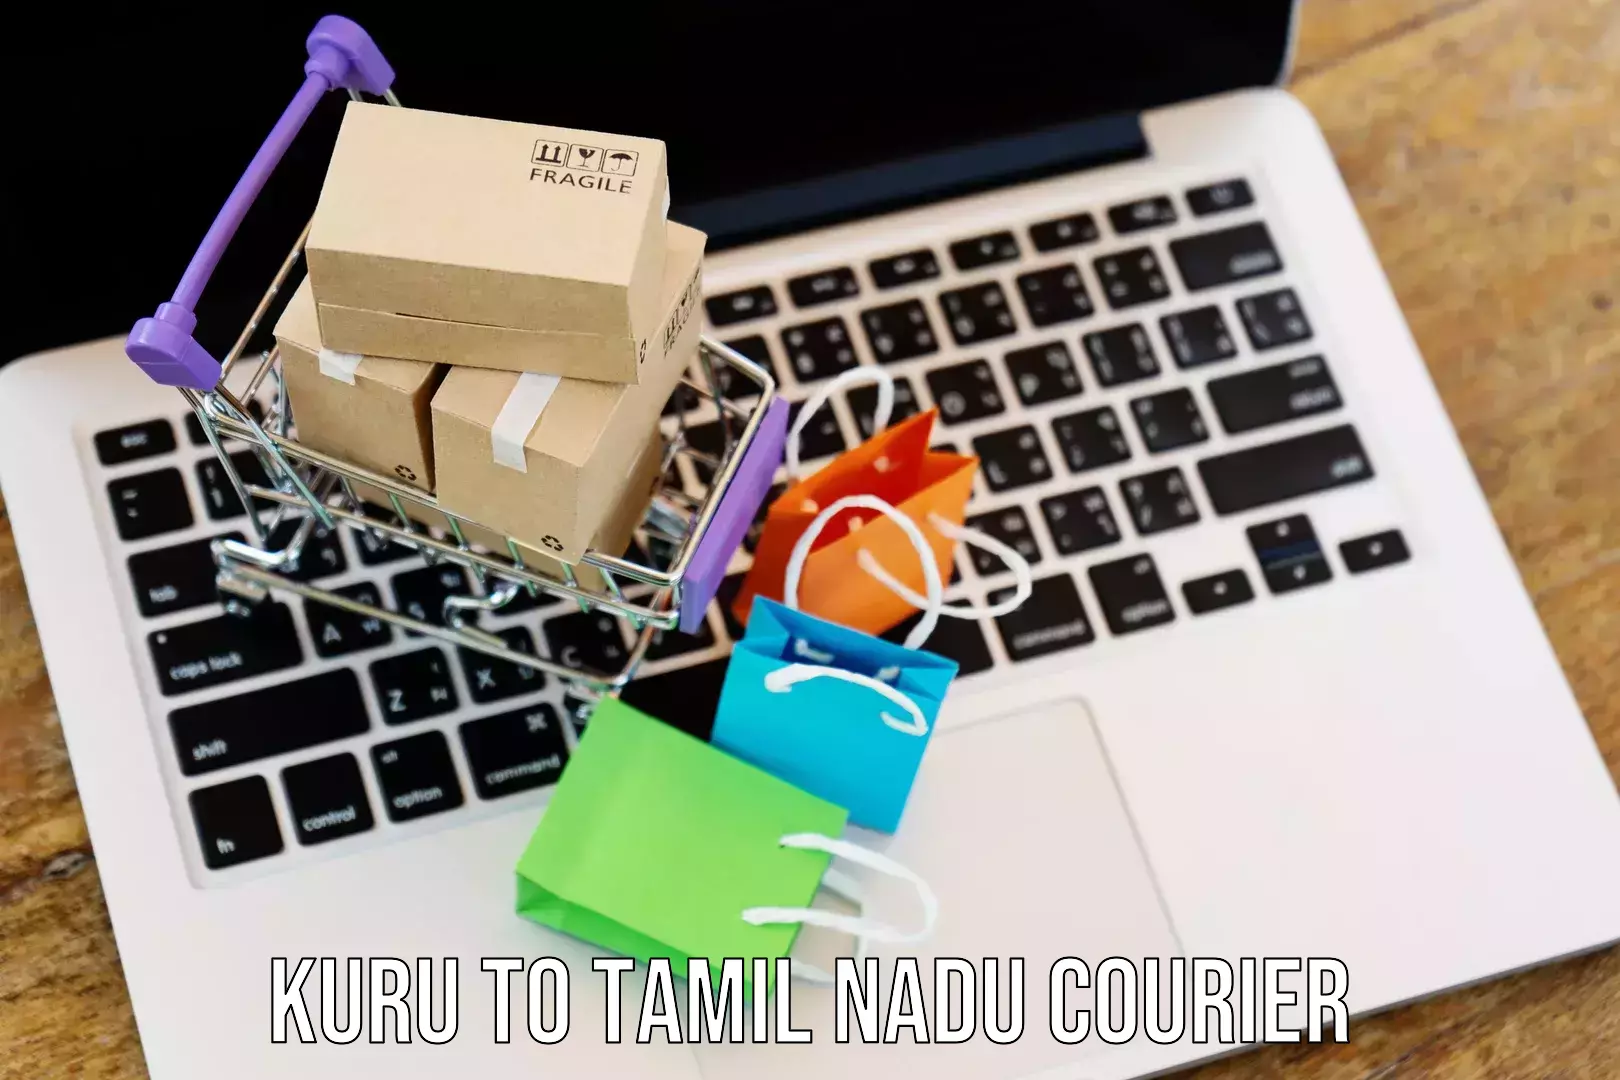 Quick dispatch service in Kuru to Tamil Nadu